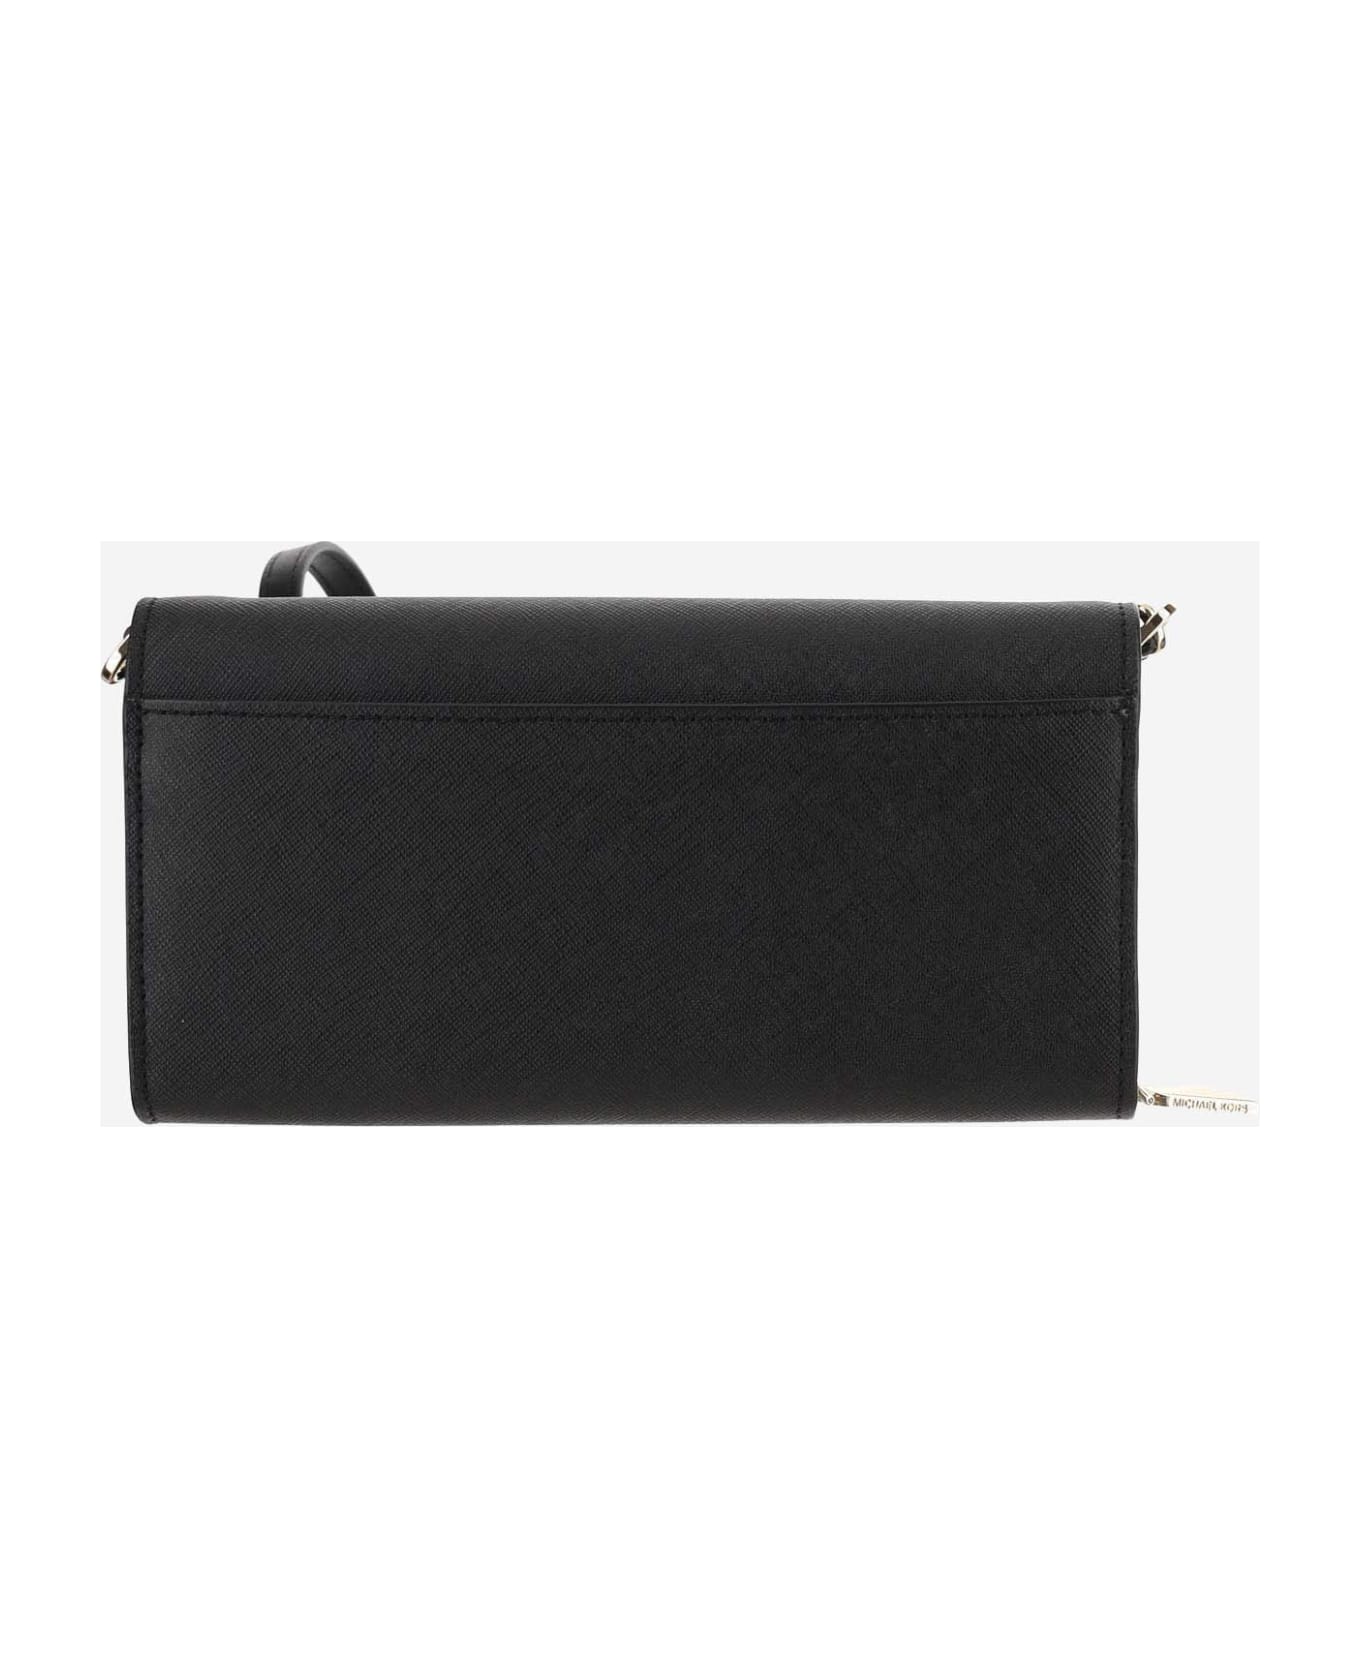 Michael Kors Wallet With Shoulder Strap - Black